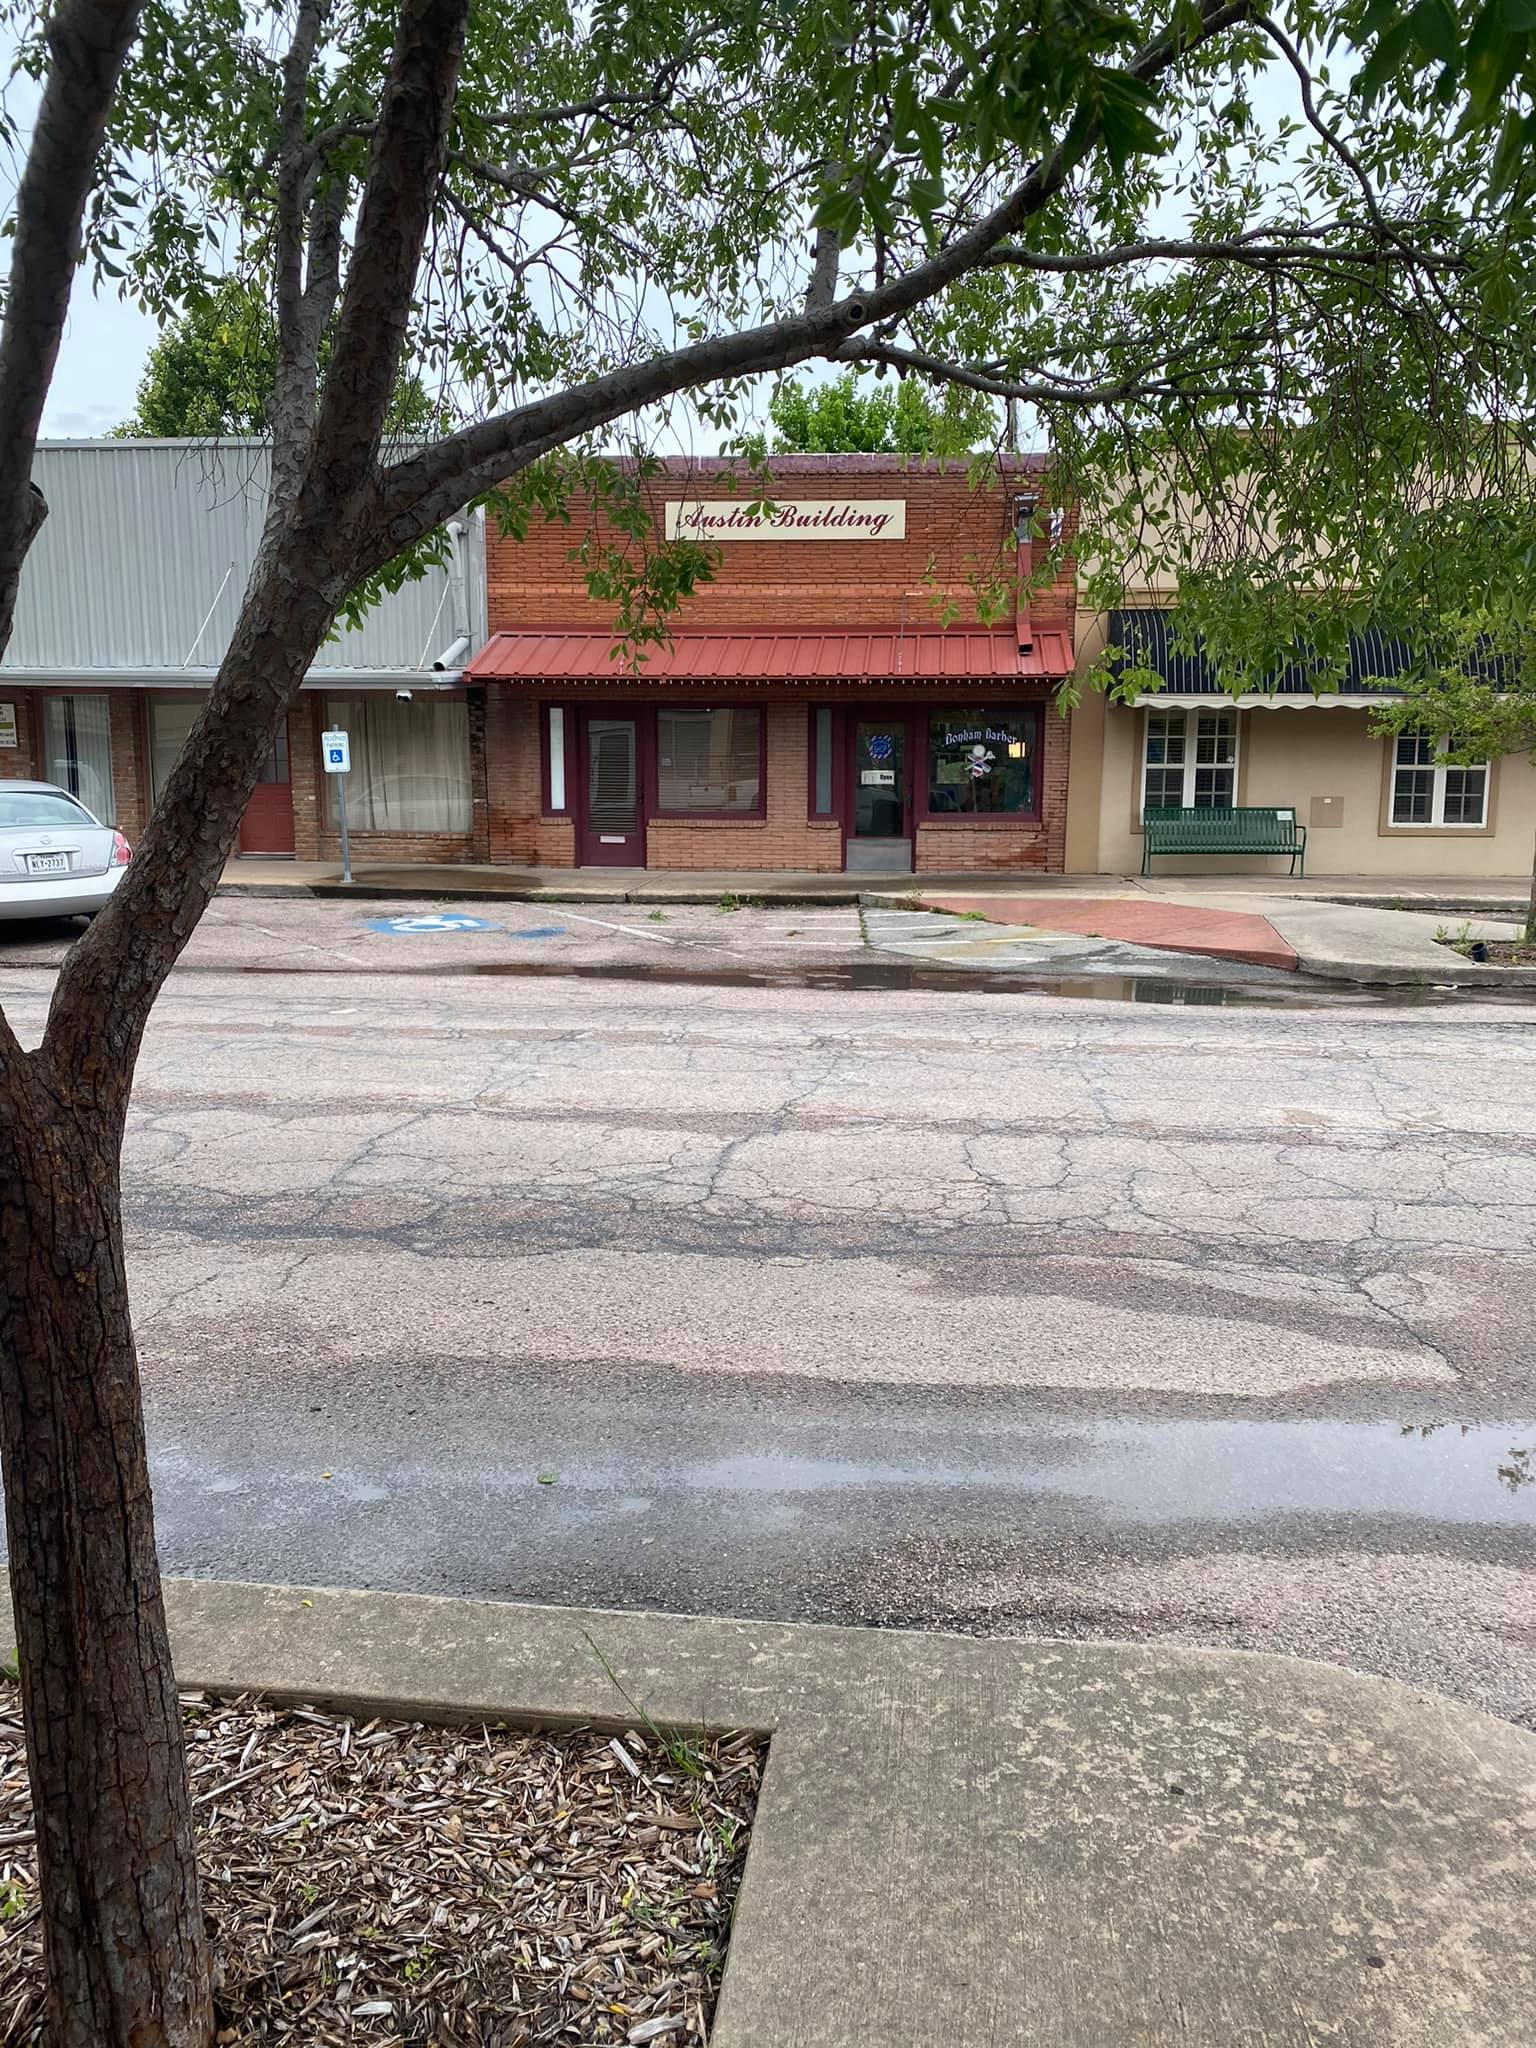 Bonham Barber Shop 512 N Main St, Bonham Texas 75418